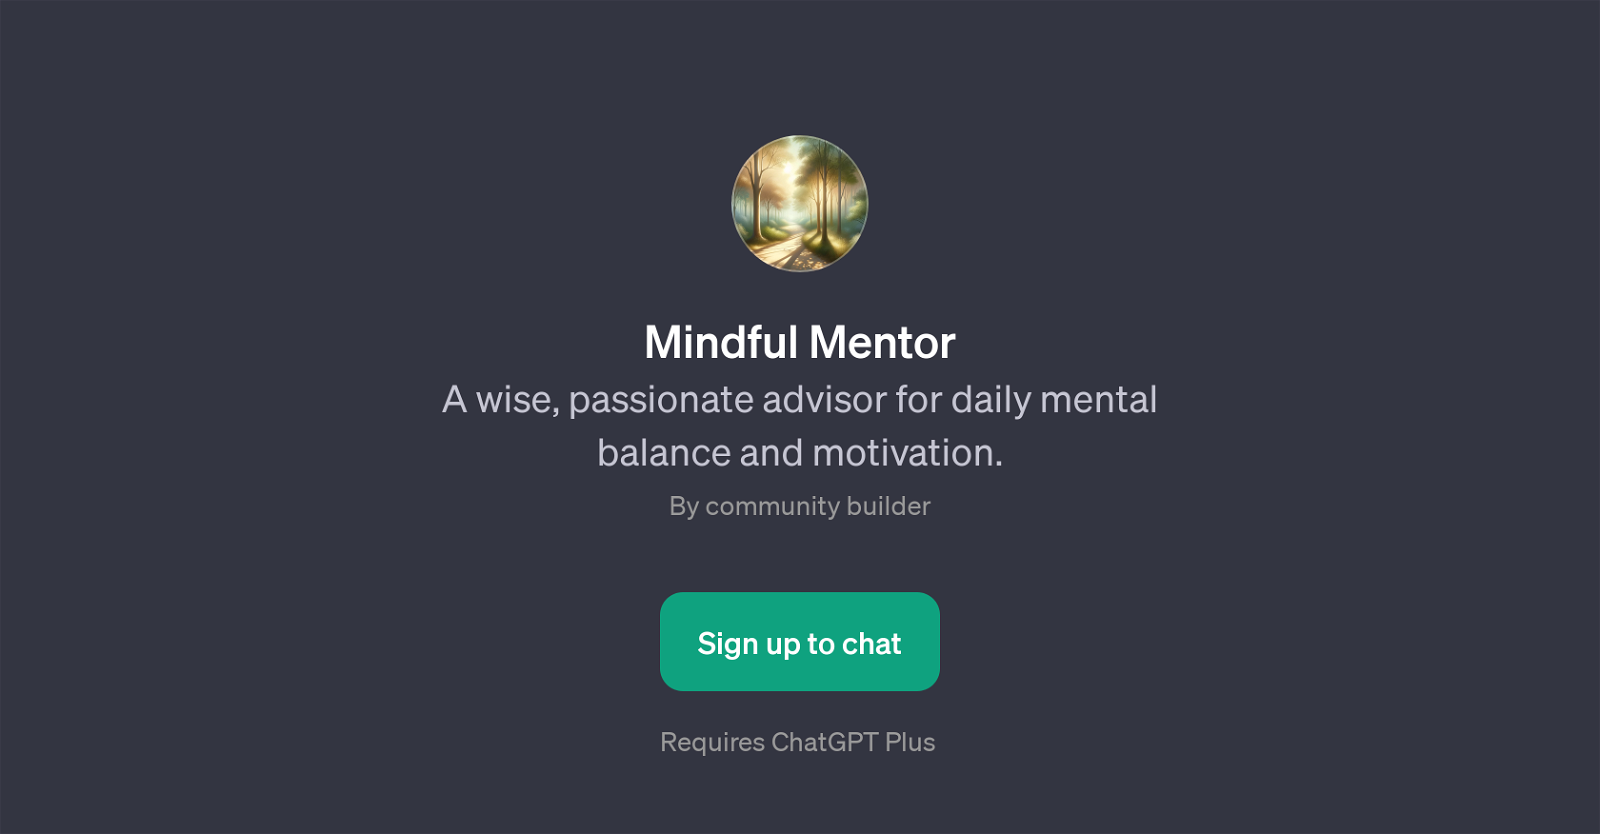 Mindful Mentor website